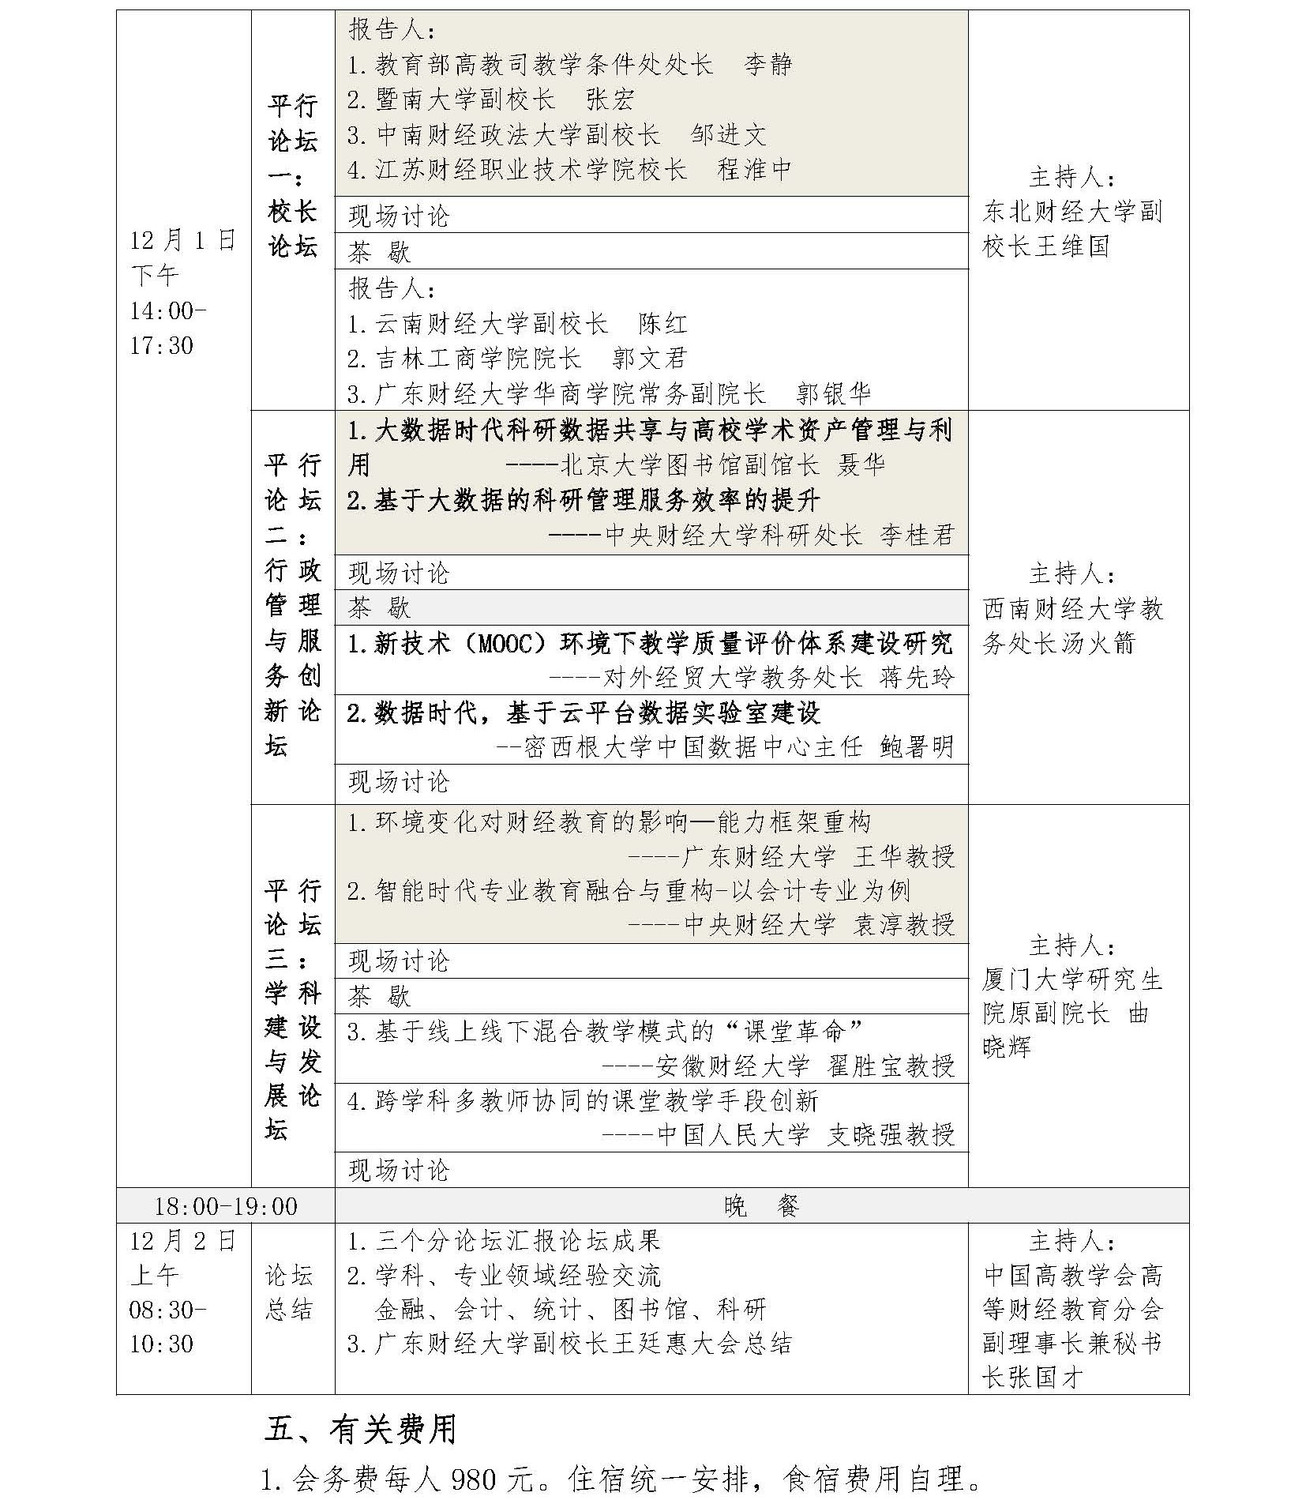 第九届中国高等财经教育校长论坛补充通知_页面_3.jpg